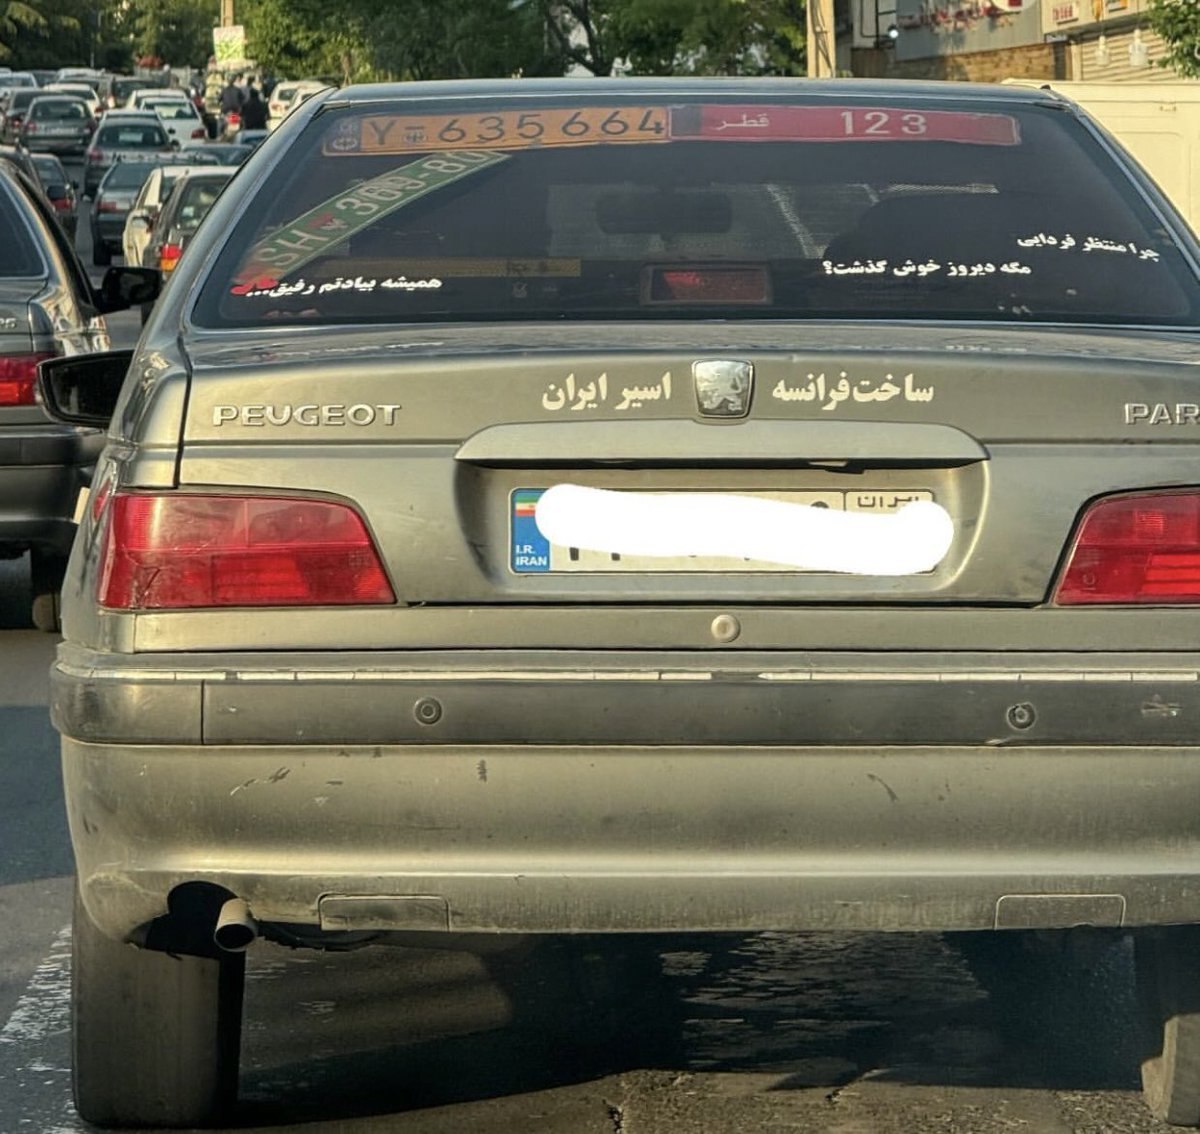 تصویری قابل تامل از نوشته پشت یک خودروی ایرانی